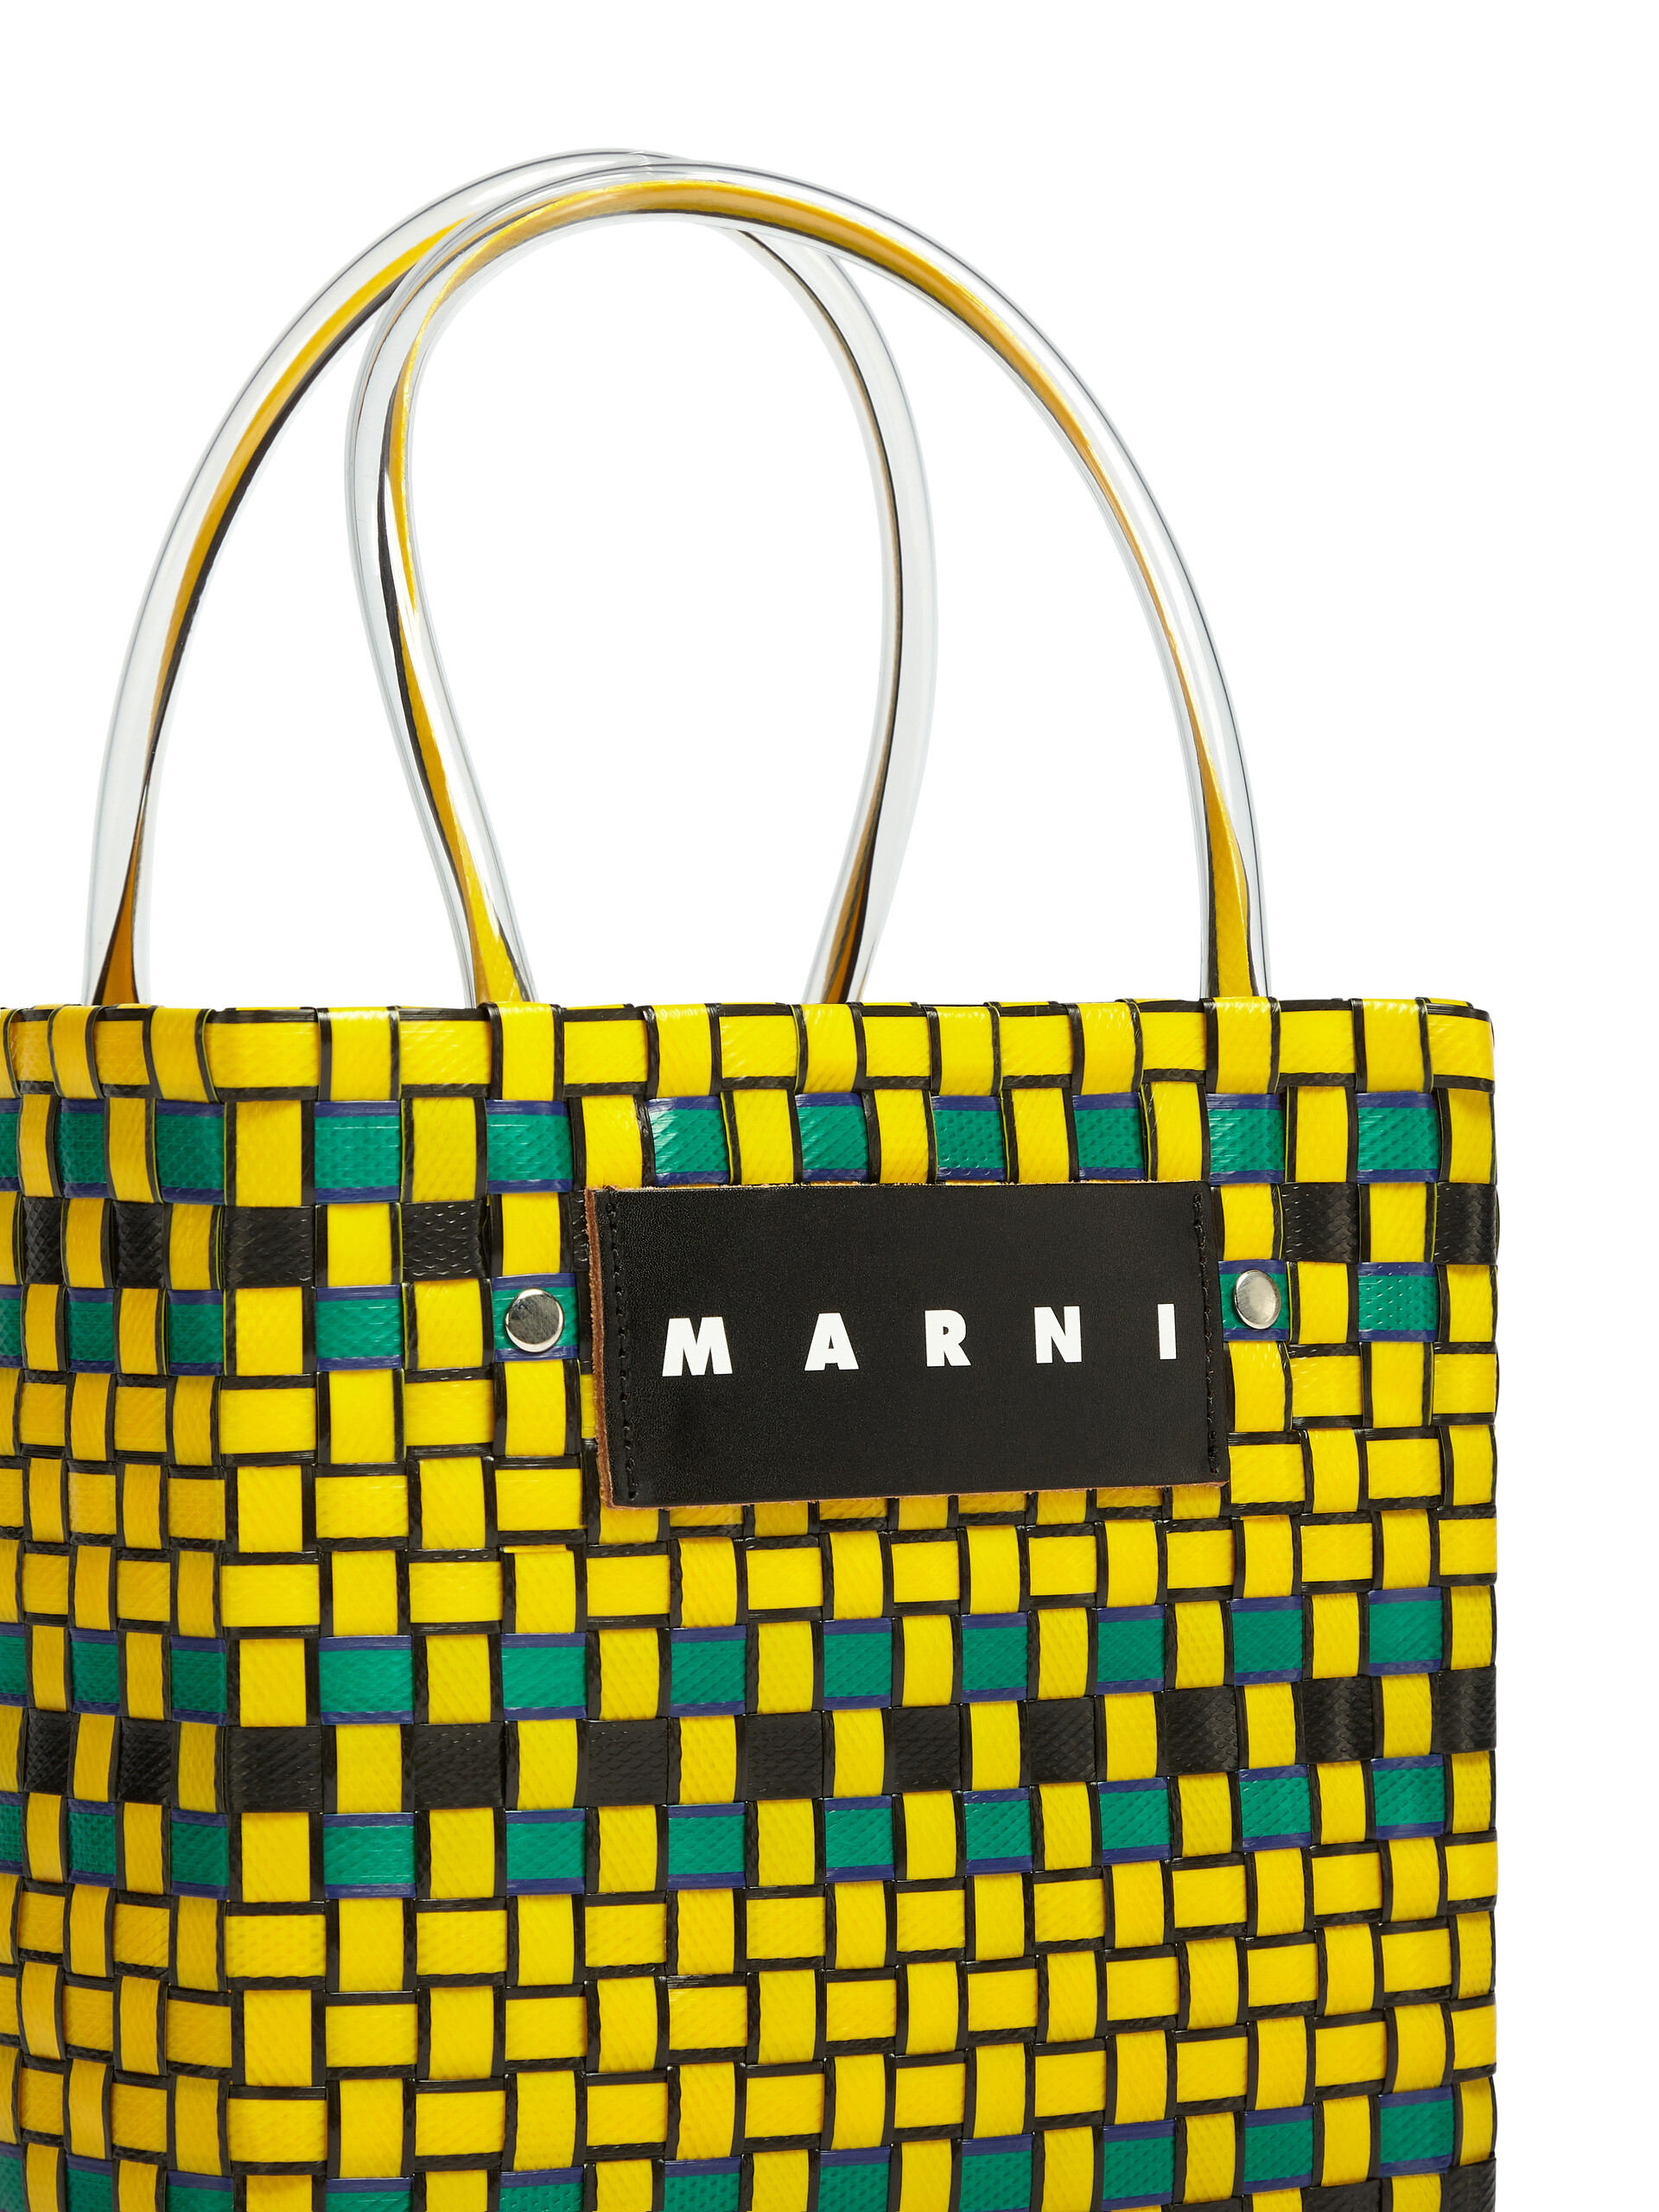 MARNI MARKET shopping bag in yellow polypropylene - Bags - Image 4